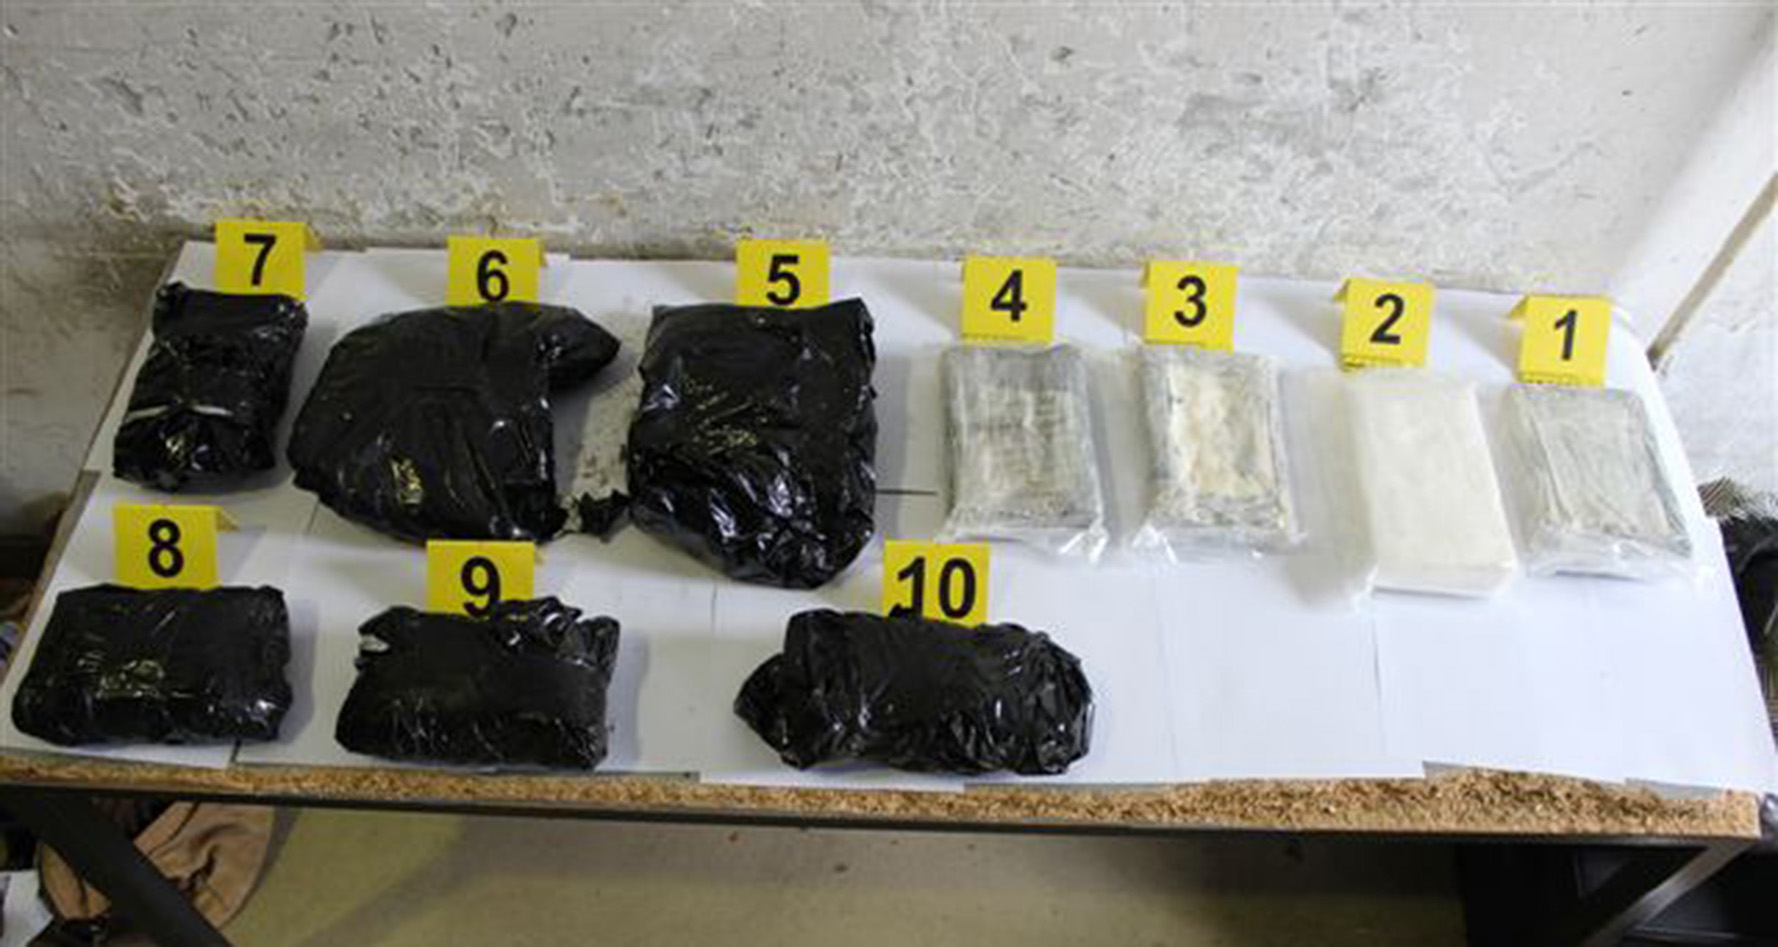 Полицијa на ГП Хоргош запленила 4,6 килограма кокаина и скоро осам килограма екстазија и спида